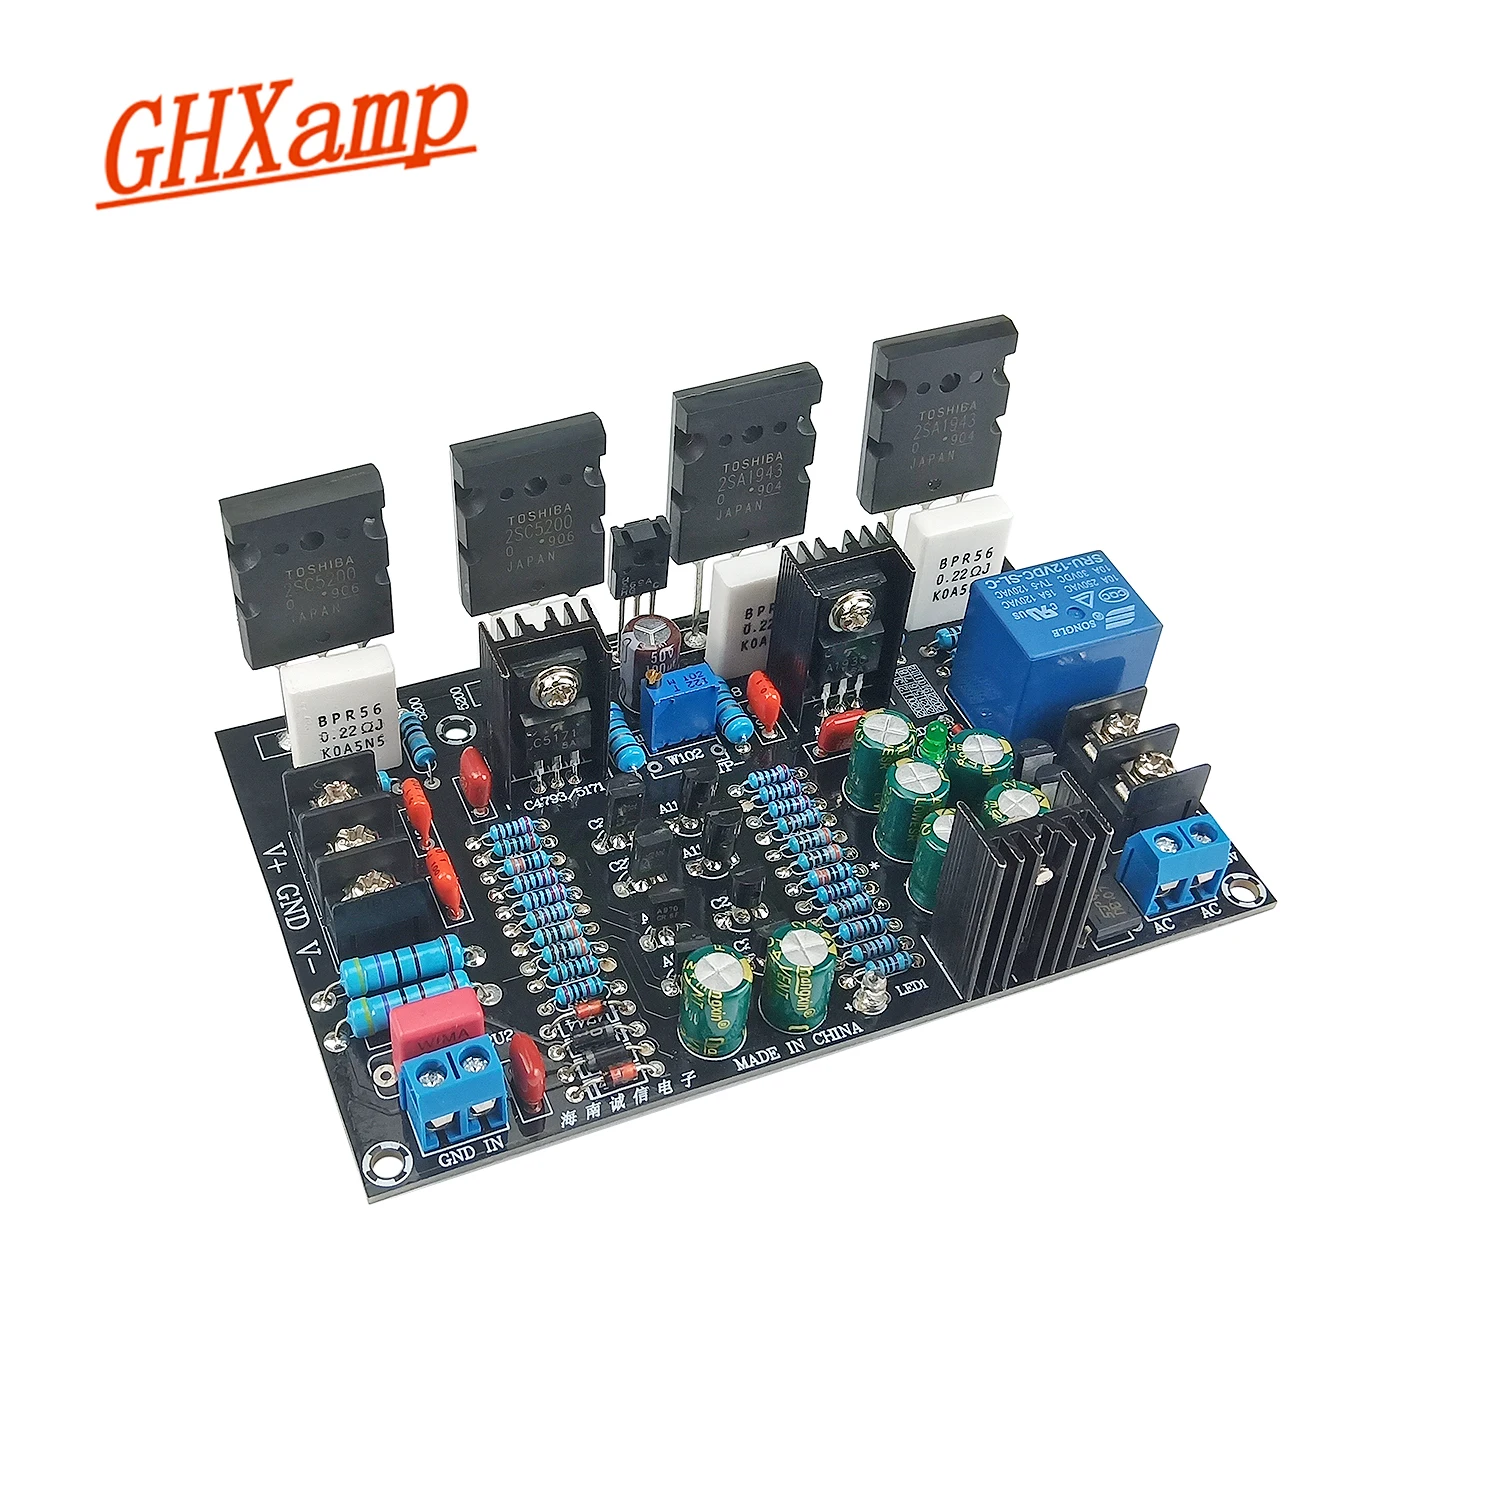 

GHXAMP 200 Вт моно усилитель мощности плата 2saeas + 2SC5200 транзисторы аудио усилитель с защитой динамика DC Dual 20-90V 1 шт.